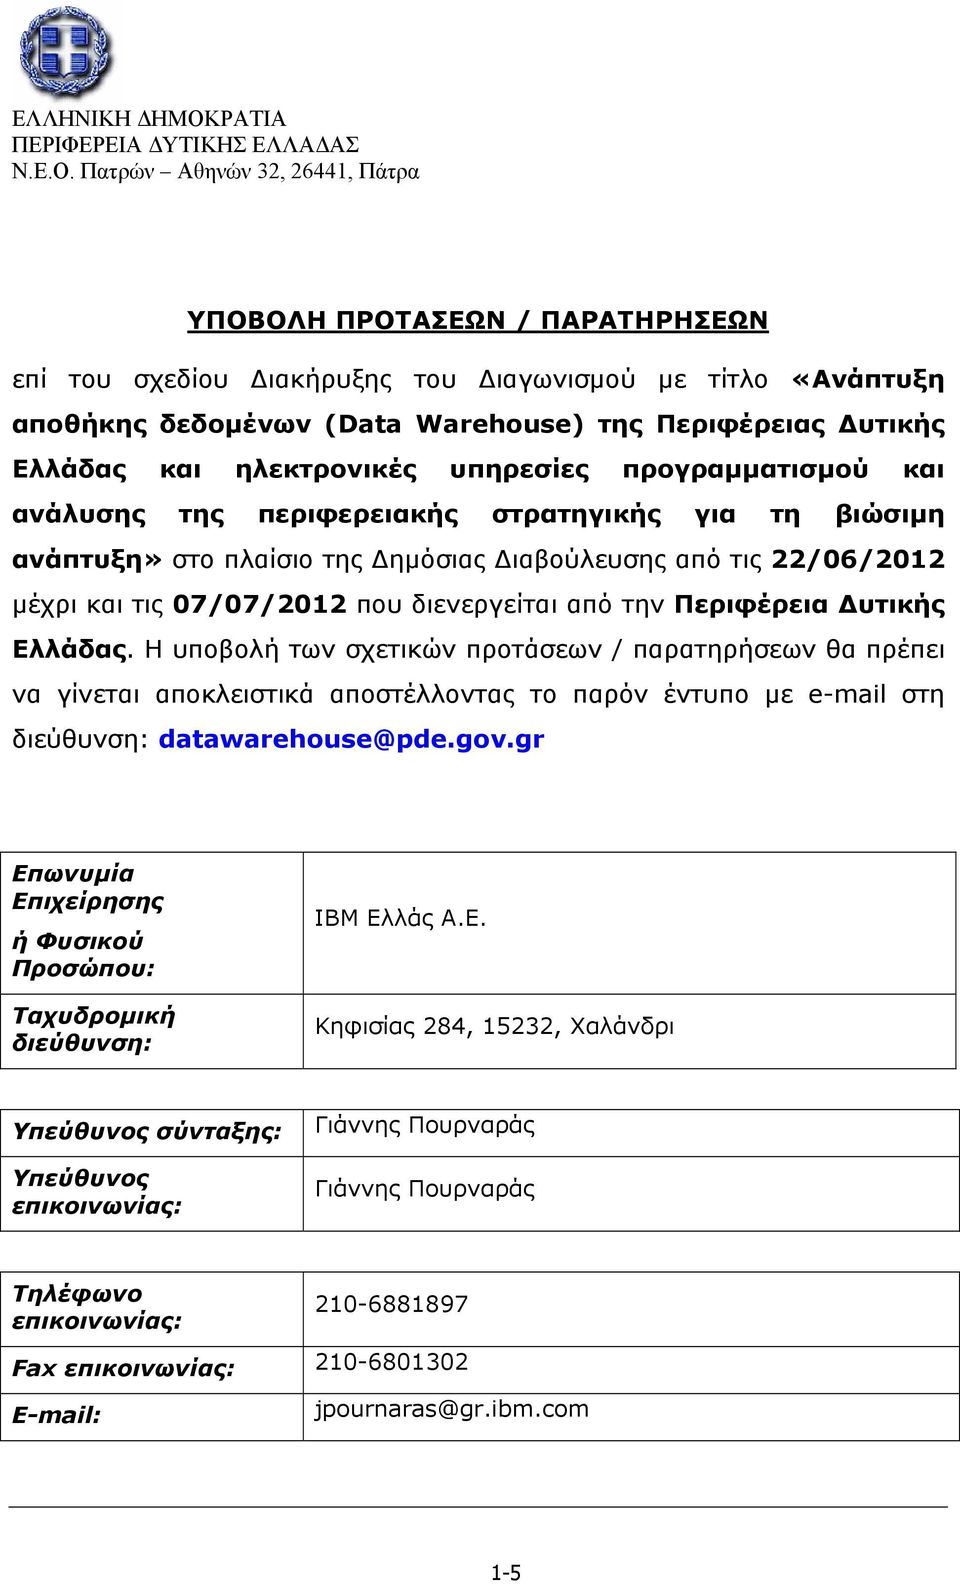 Περιφέρεια Δυτικής Ελλάδας. H υποβολή των σχετικών προτάσεων / παρατηρήσεων θα πρέπει να γίνεται αποκλειστικά αποστέλλοντας το παρόν έντυπο με e-mail στη διεύθυνση: datawarehouse@pde.gov.